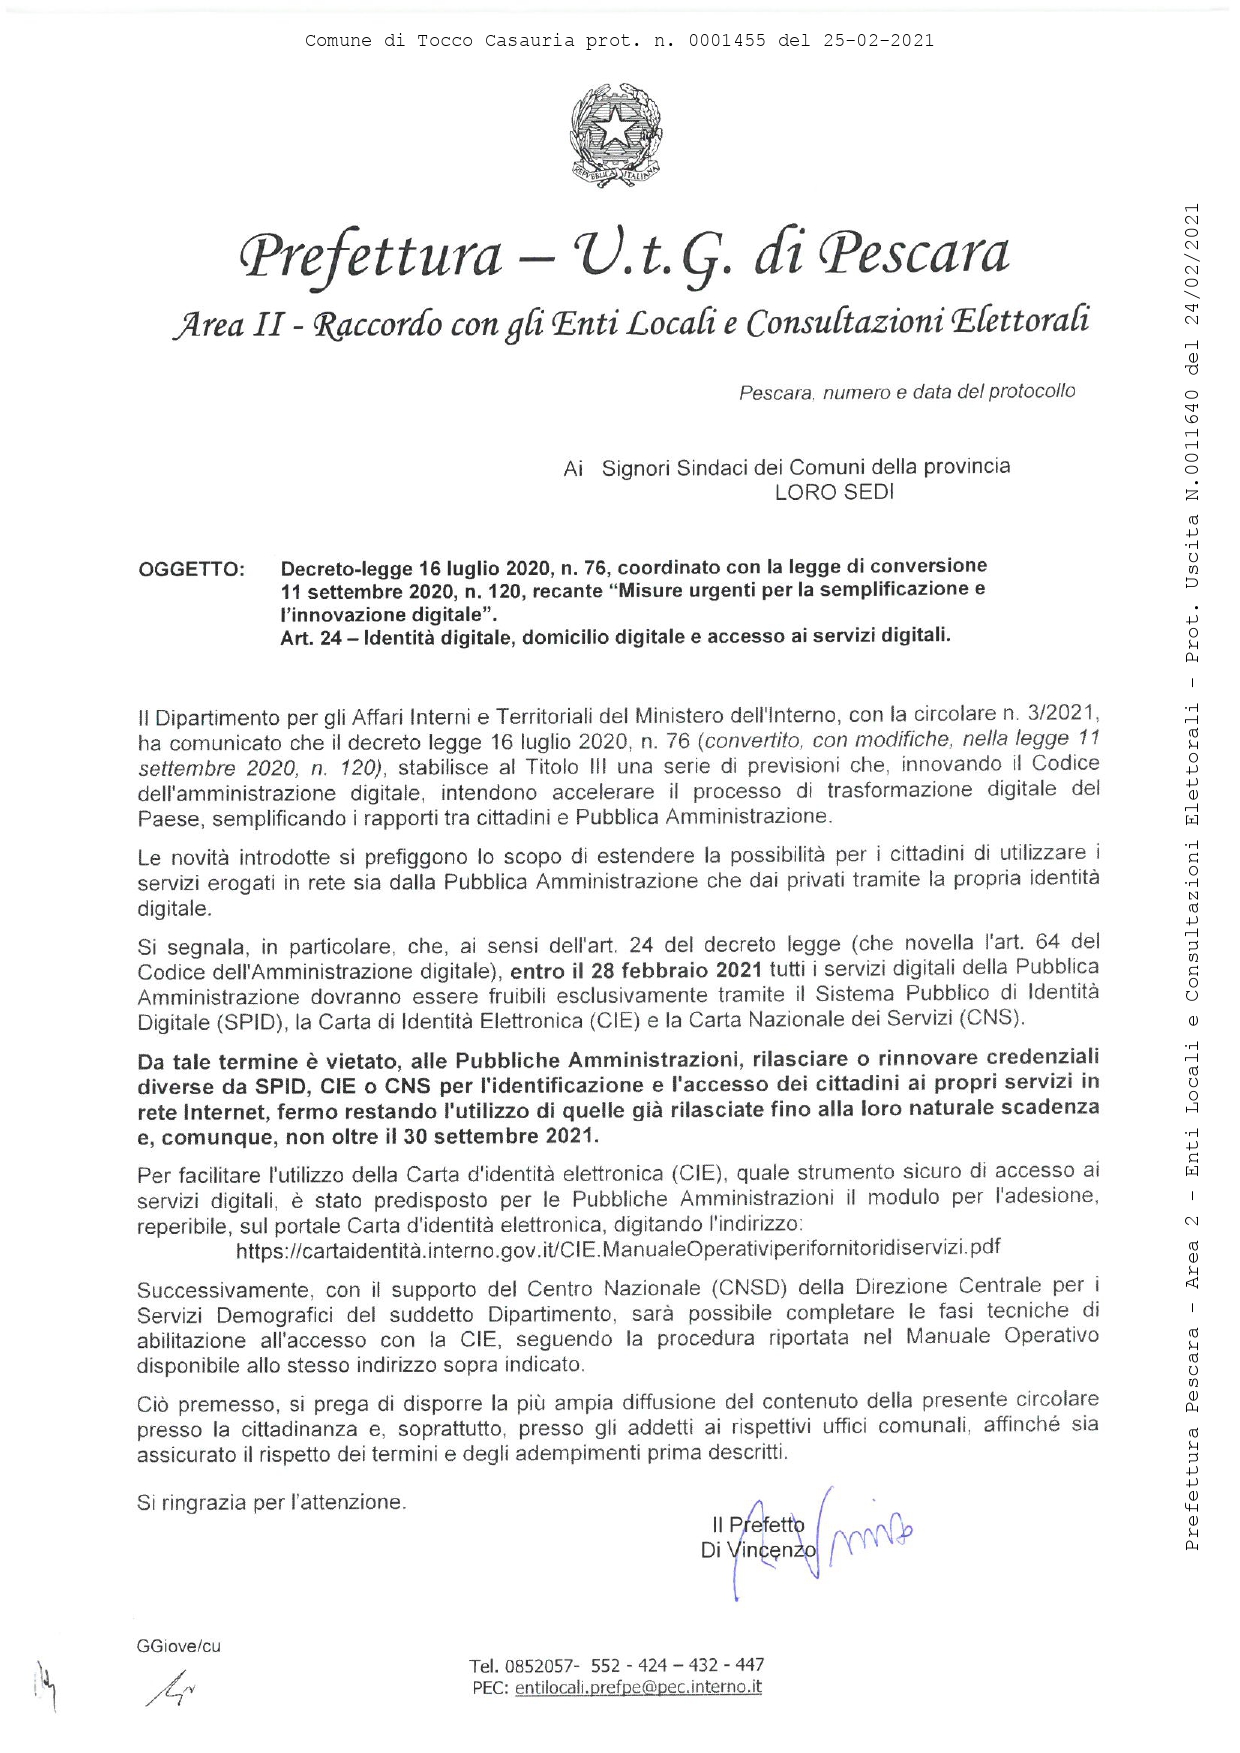 MISURE URGENTI PER LA SEMPLIFICAZIONE E L'INNOVAZIONE  DIGITALE D.L. 76/2020